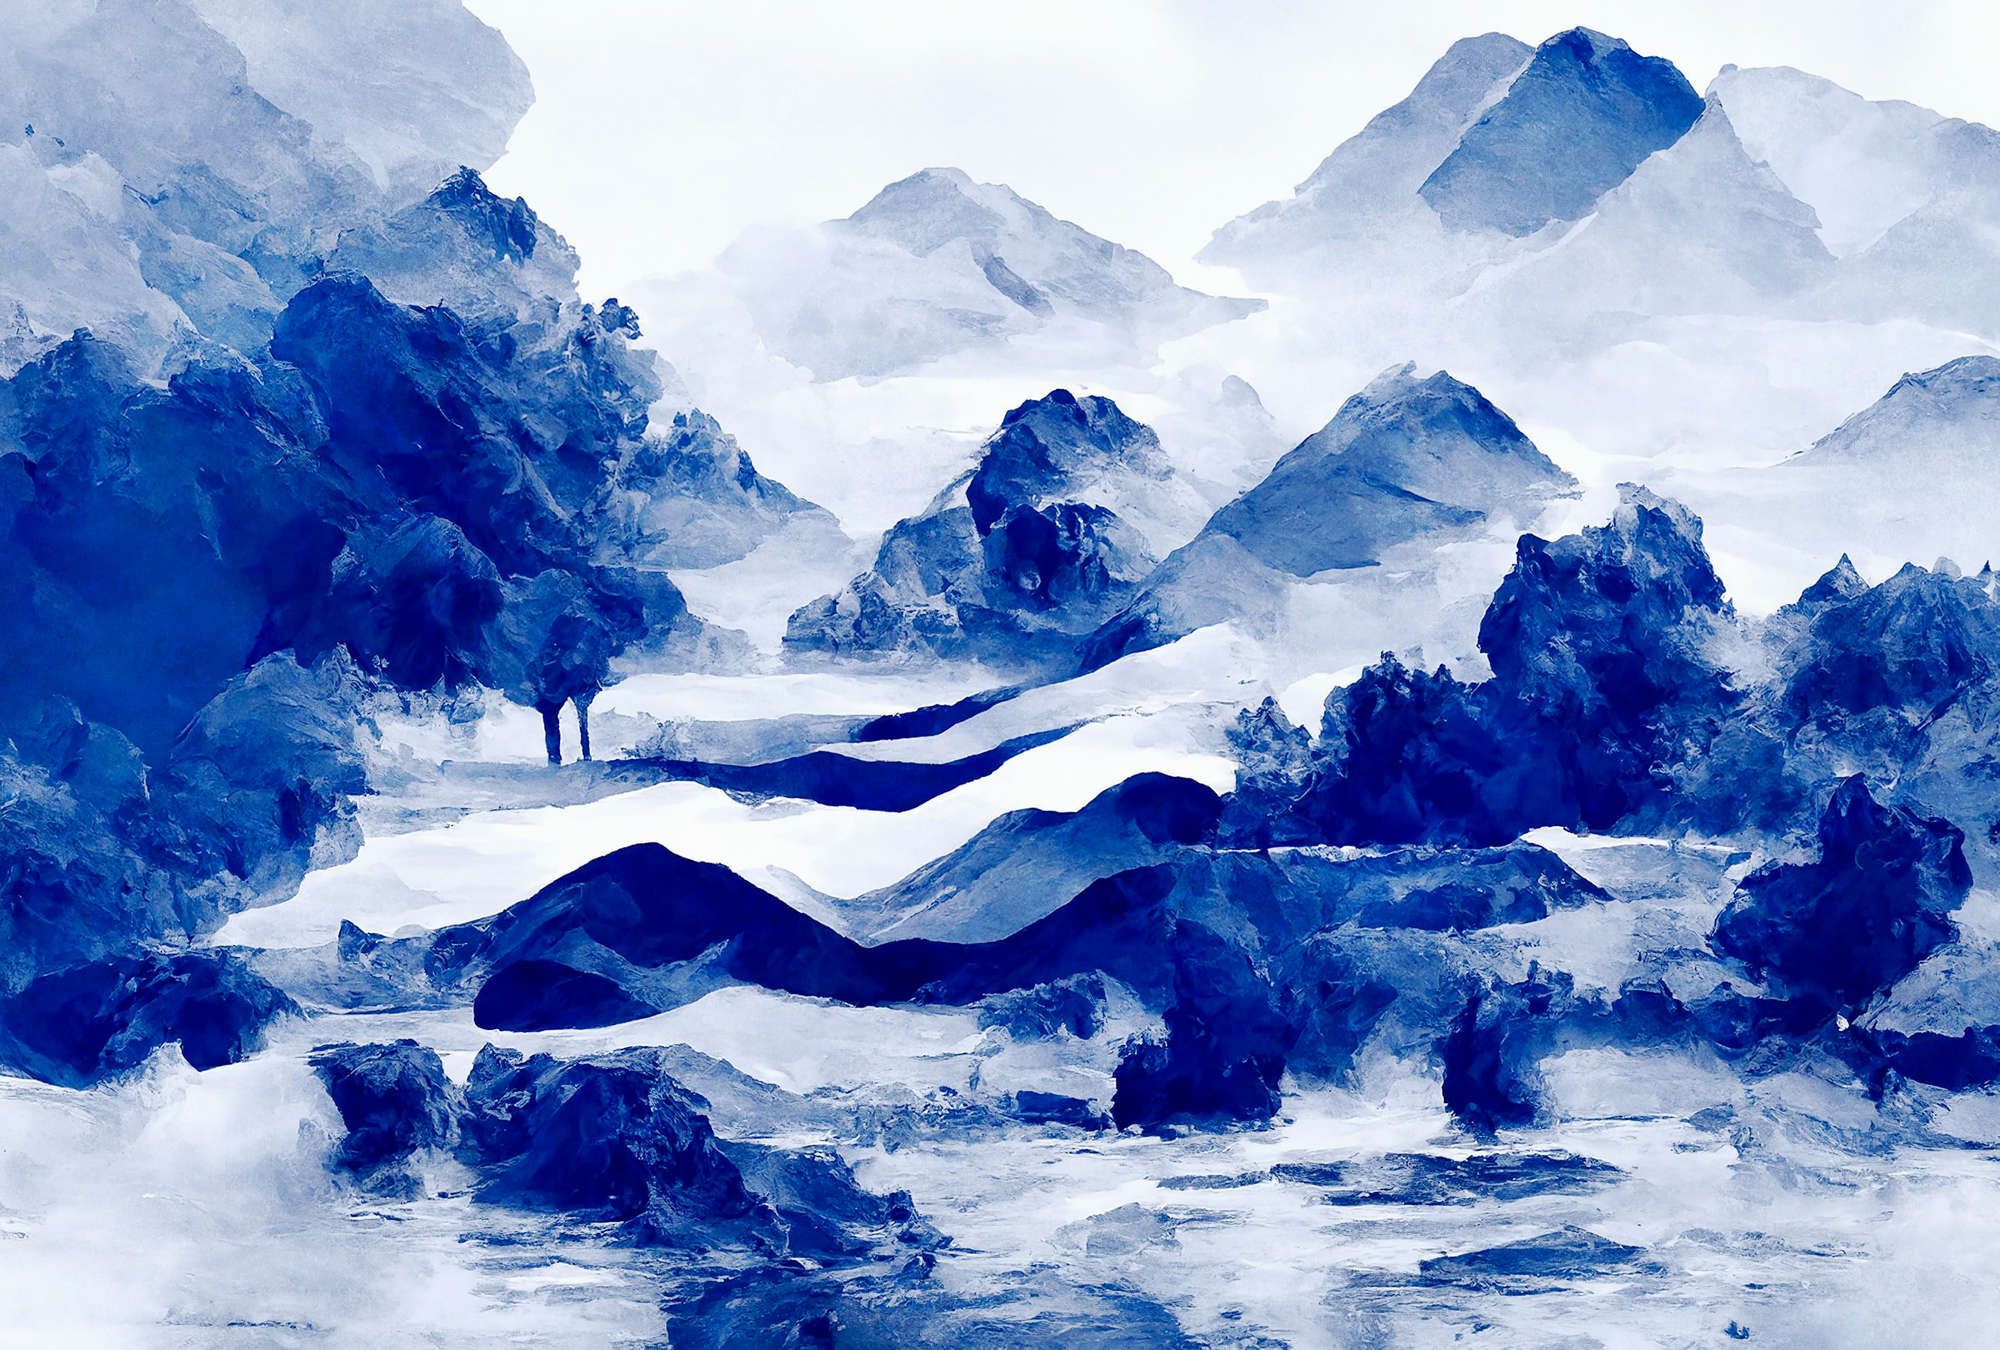             Fotomurali »tinterra 3« - Paesaggio con montagne e nebbia - Blu | Opaco, tessuto non tessuto liscio
        